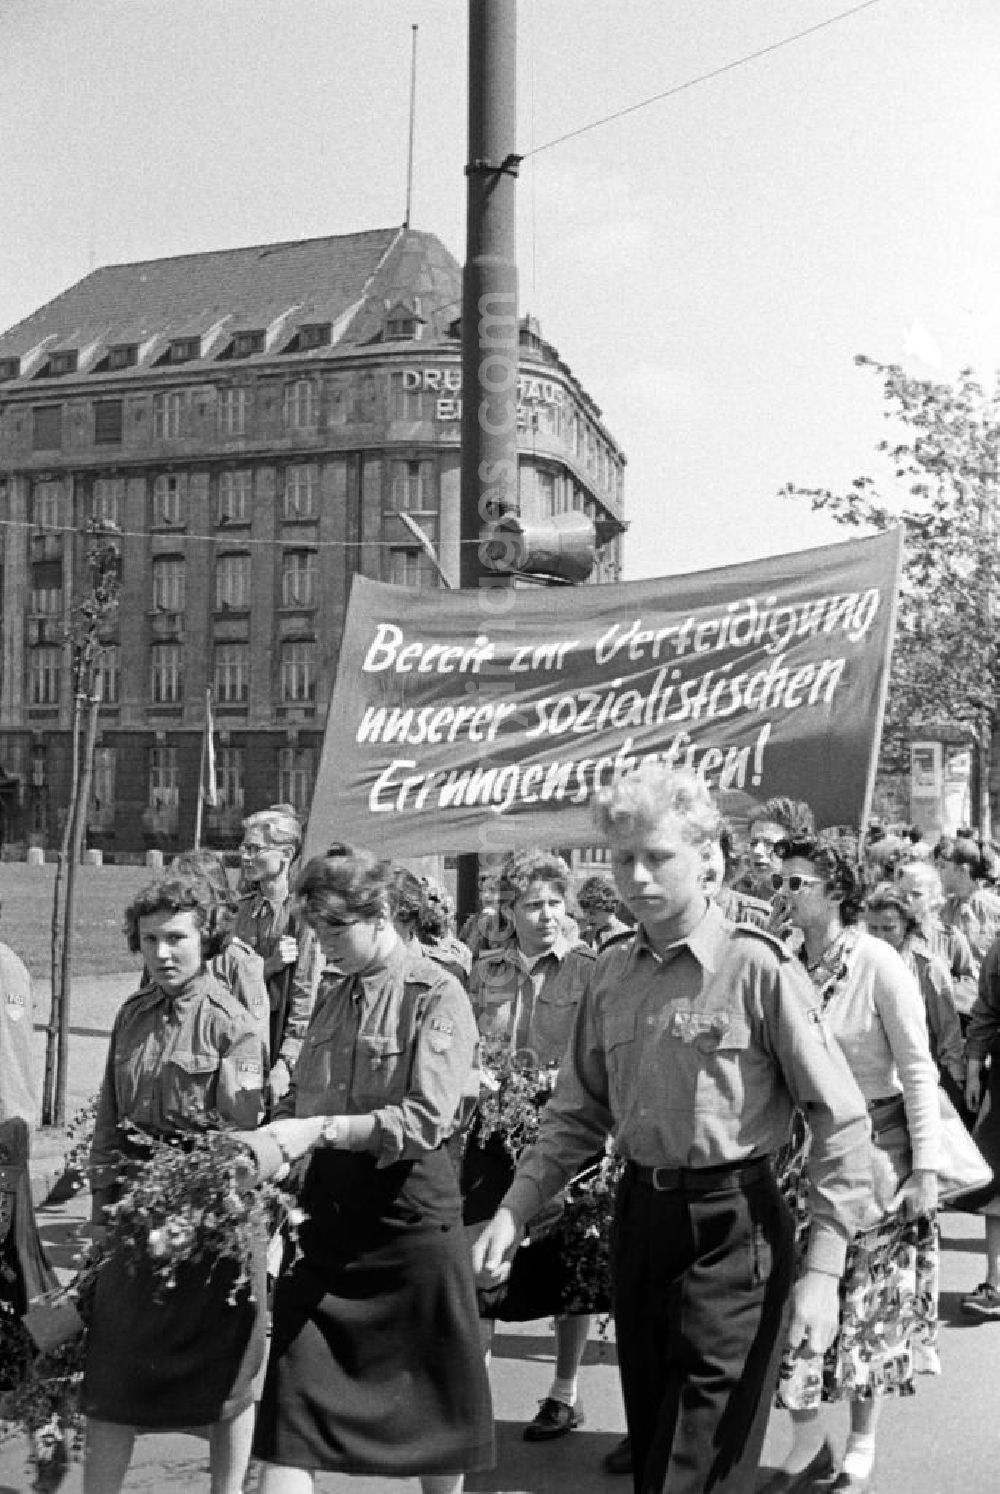 GDR picture archive: Leipzig - FDJler tragen auf der Demonstration zum 1. Mai 1957 in Leipzig ein Transparent mit der Aufschrift Bereit zur Verteidigung unserer sozialistischen Errungenschaften!